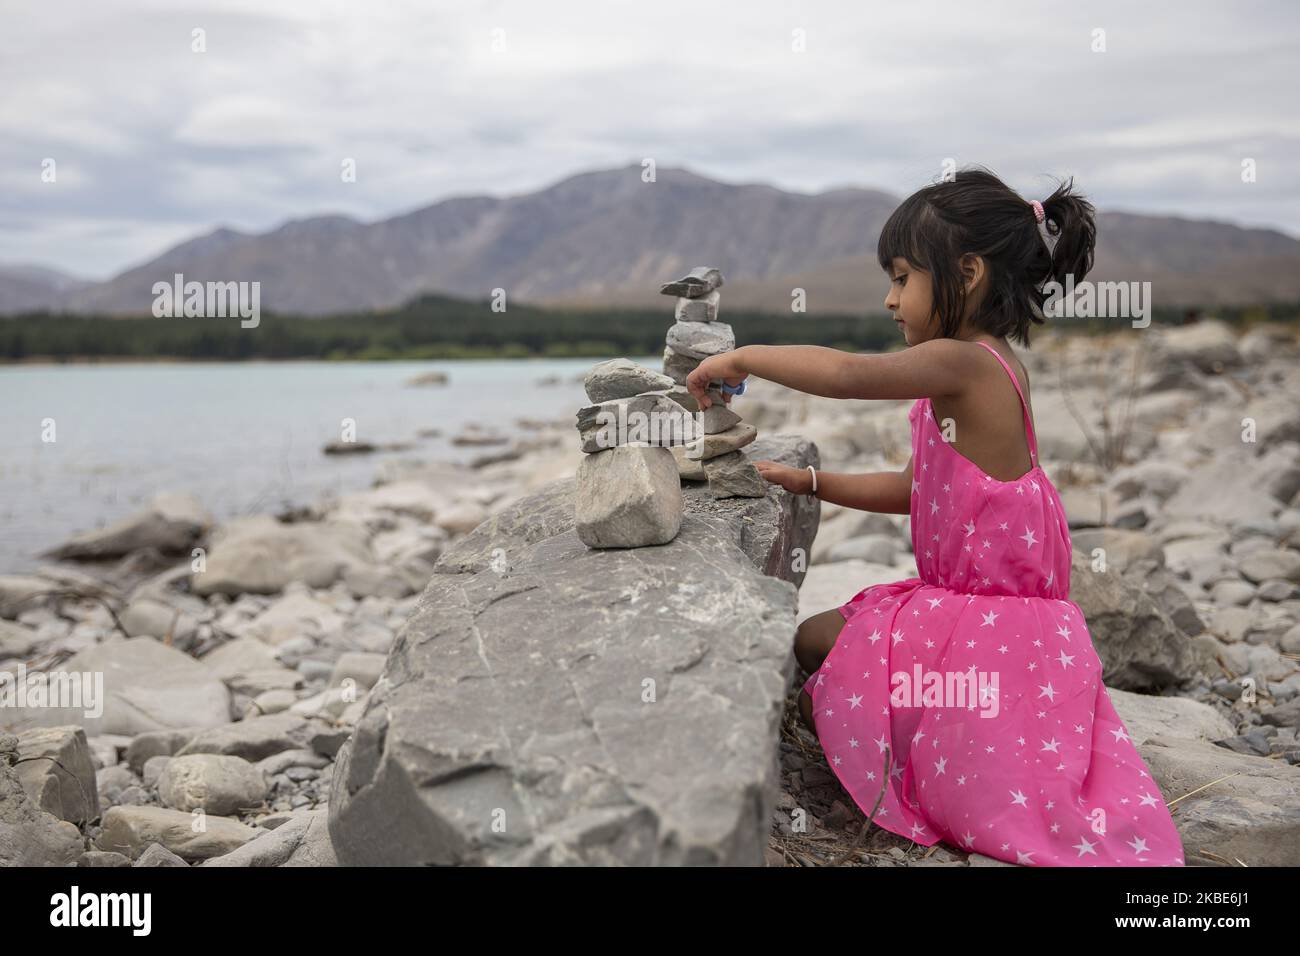 Ein kleines Mädchen versucht am 10. Januar 2020 am See TekapoÂ auf der zentralen Südinsel von New ZealandÂ eine temporäre Skulptur aus Steinen zu schaffen.Â Tekapo ist eine der beliebtesten Touristenattraktionen Neuseelands.Â Â (Foto: Sanka Vidanagama/NurPhoto) Stockfoto